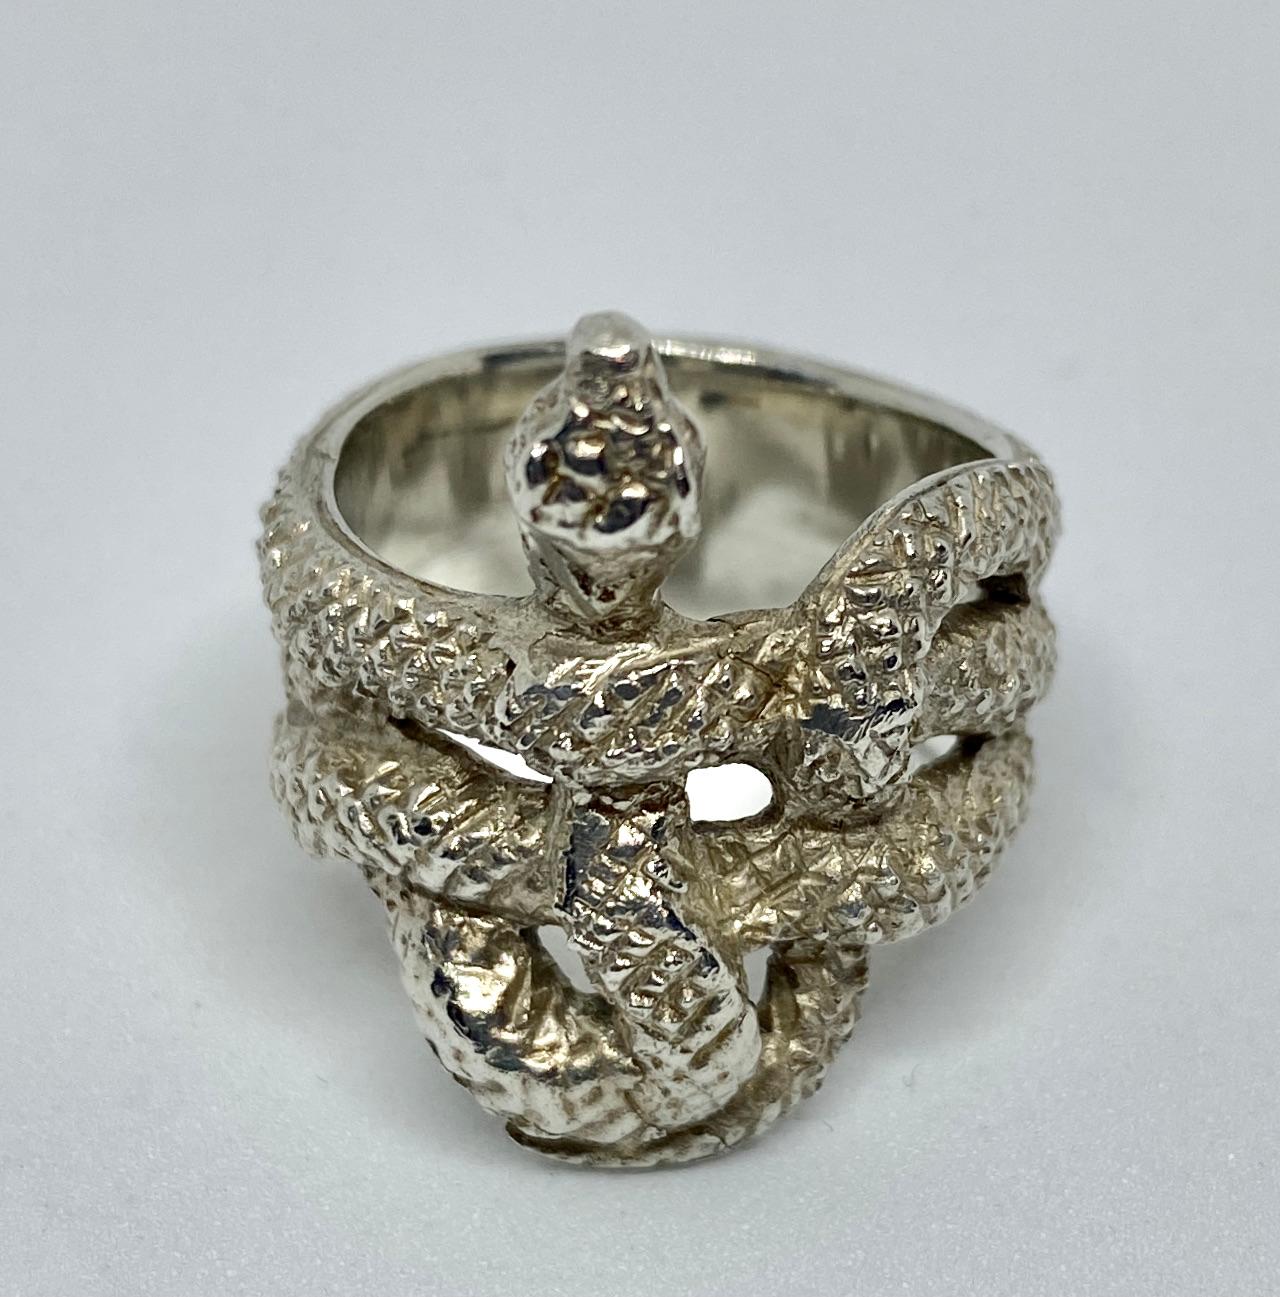 Ein neuer, ungetragener Ring in Form einer Schlange, hergestellt aus Sterlingsilber von Buccellati. Der Ring wird mit seinem Original-Lederetui und einem Zertifikat mit Buccellati-Briefkopf geliefert.

Der Ring ist mit 